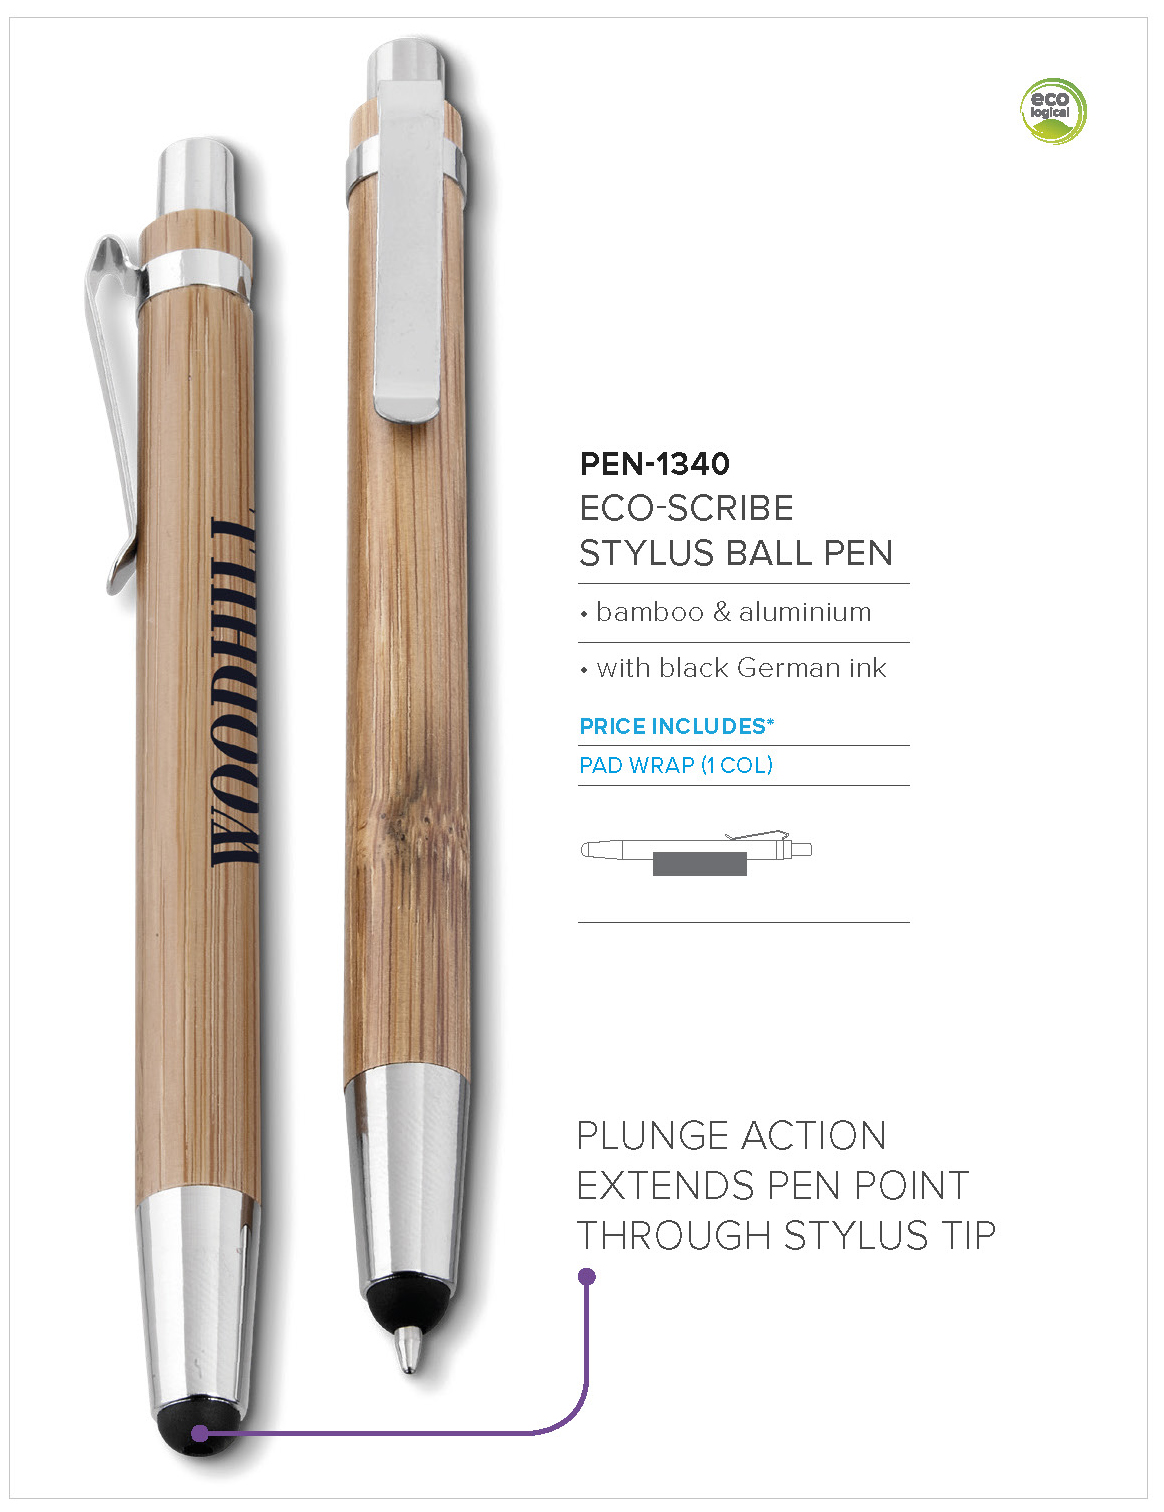 PEN-1340 - Eco-Scribe Stylus Ball Pen - Catalogue Image